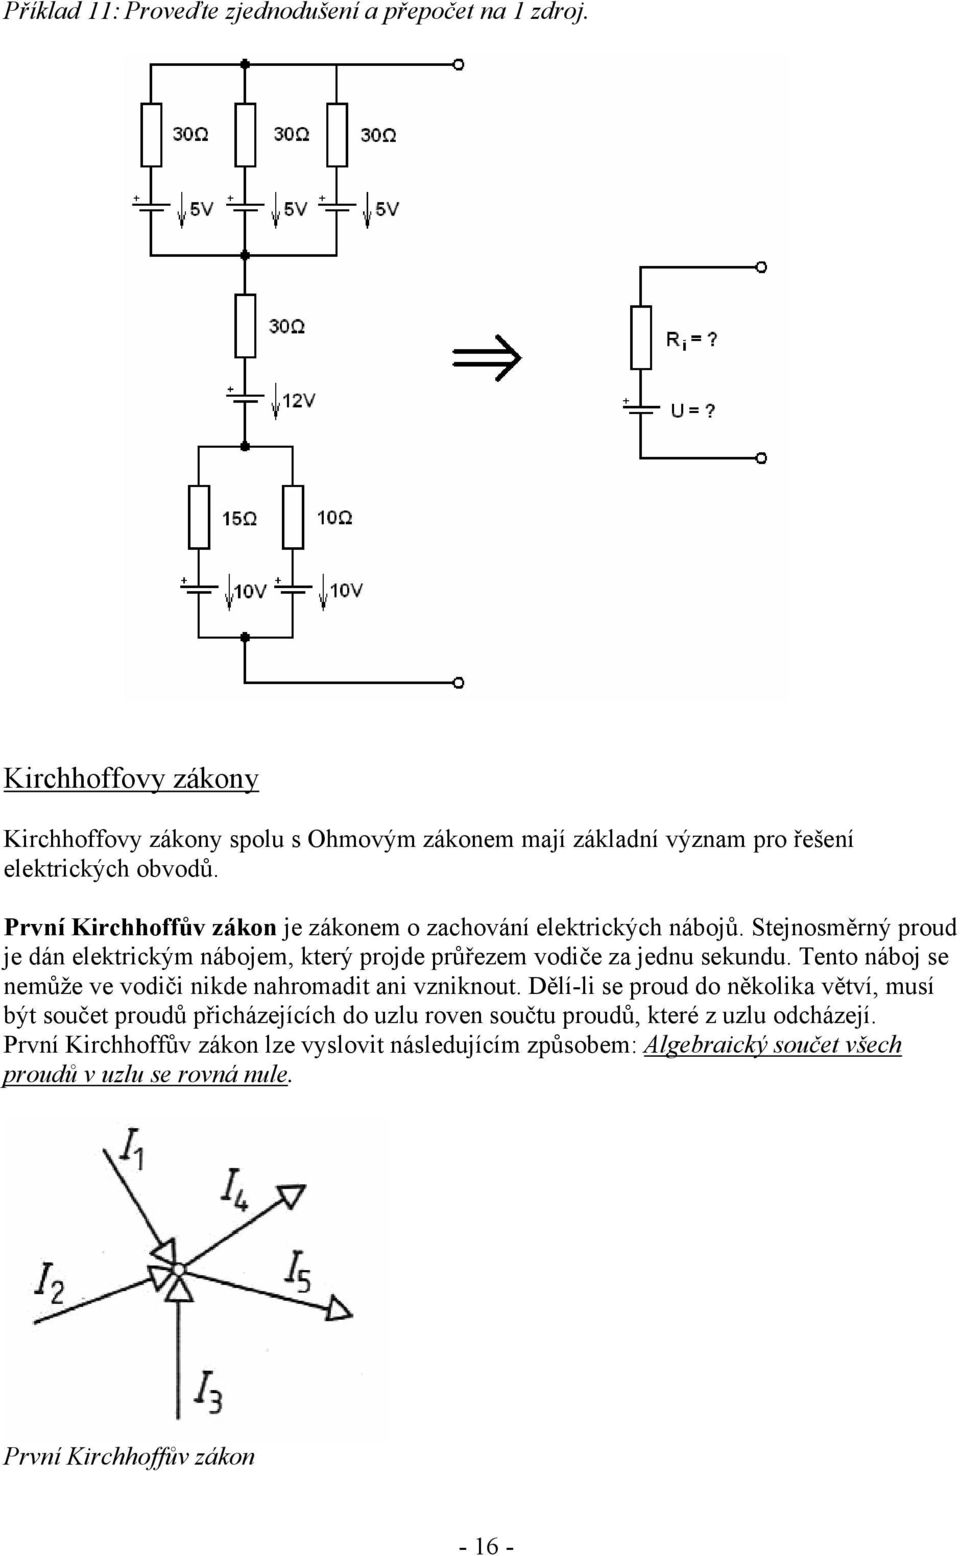 První Kirchhoffův zákon je zákonem o zachování elektrických nábojů. Stejnosměrný proud je dán elektrickým nábojem, který projde průřezem vodiče za jednu sekundu.